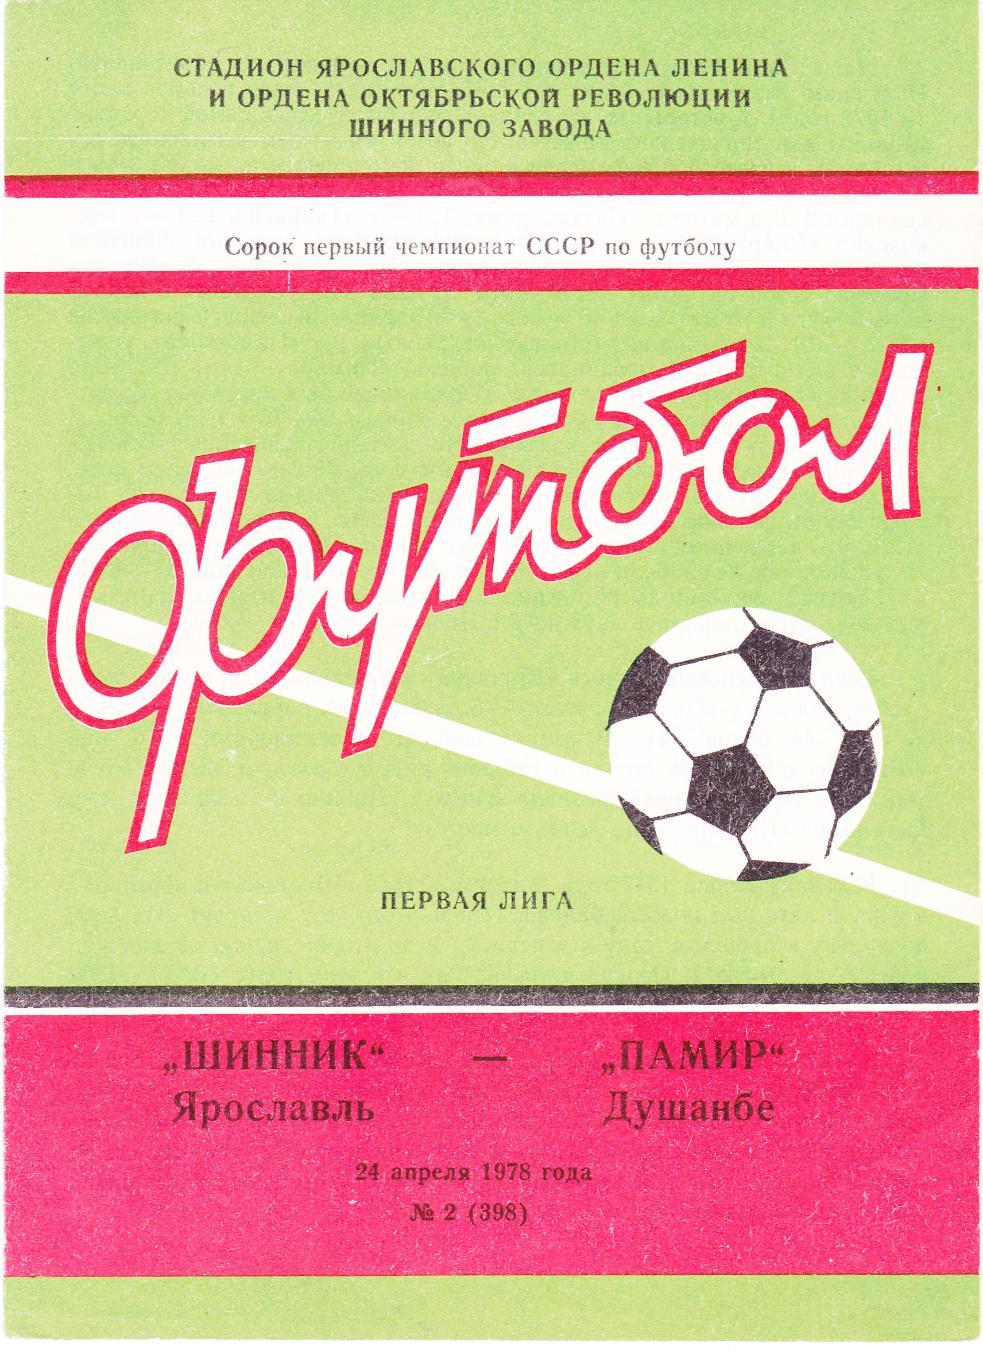 Шинник (Ярославль) - Памир (Душамбе) 24.04.1978